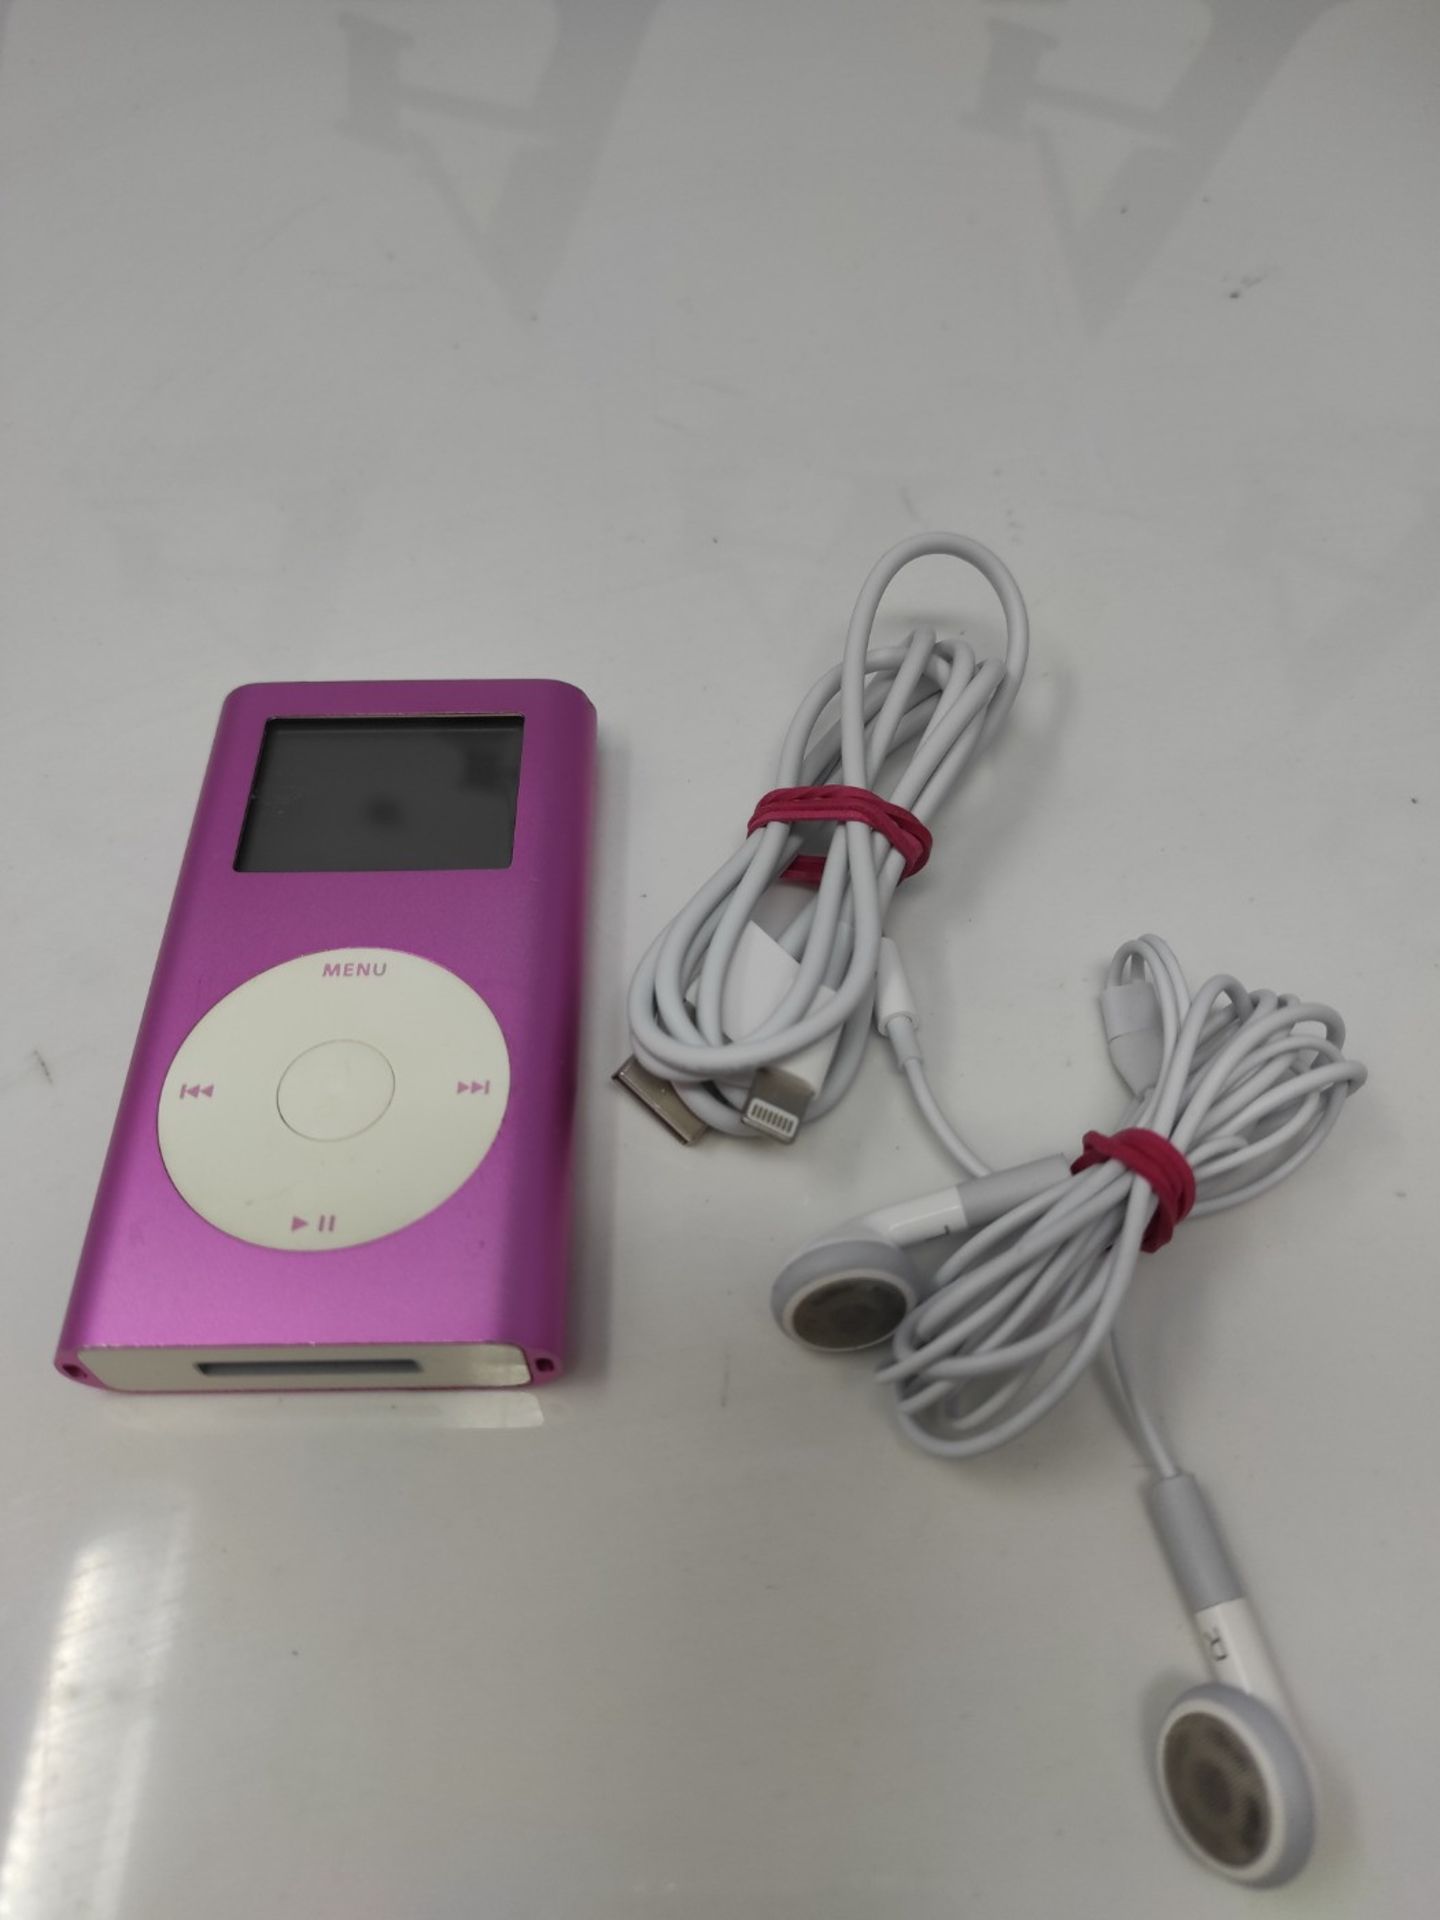 Apple iPod mini 4GB - pink